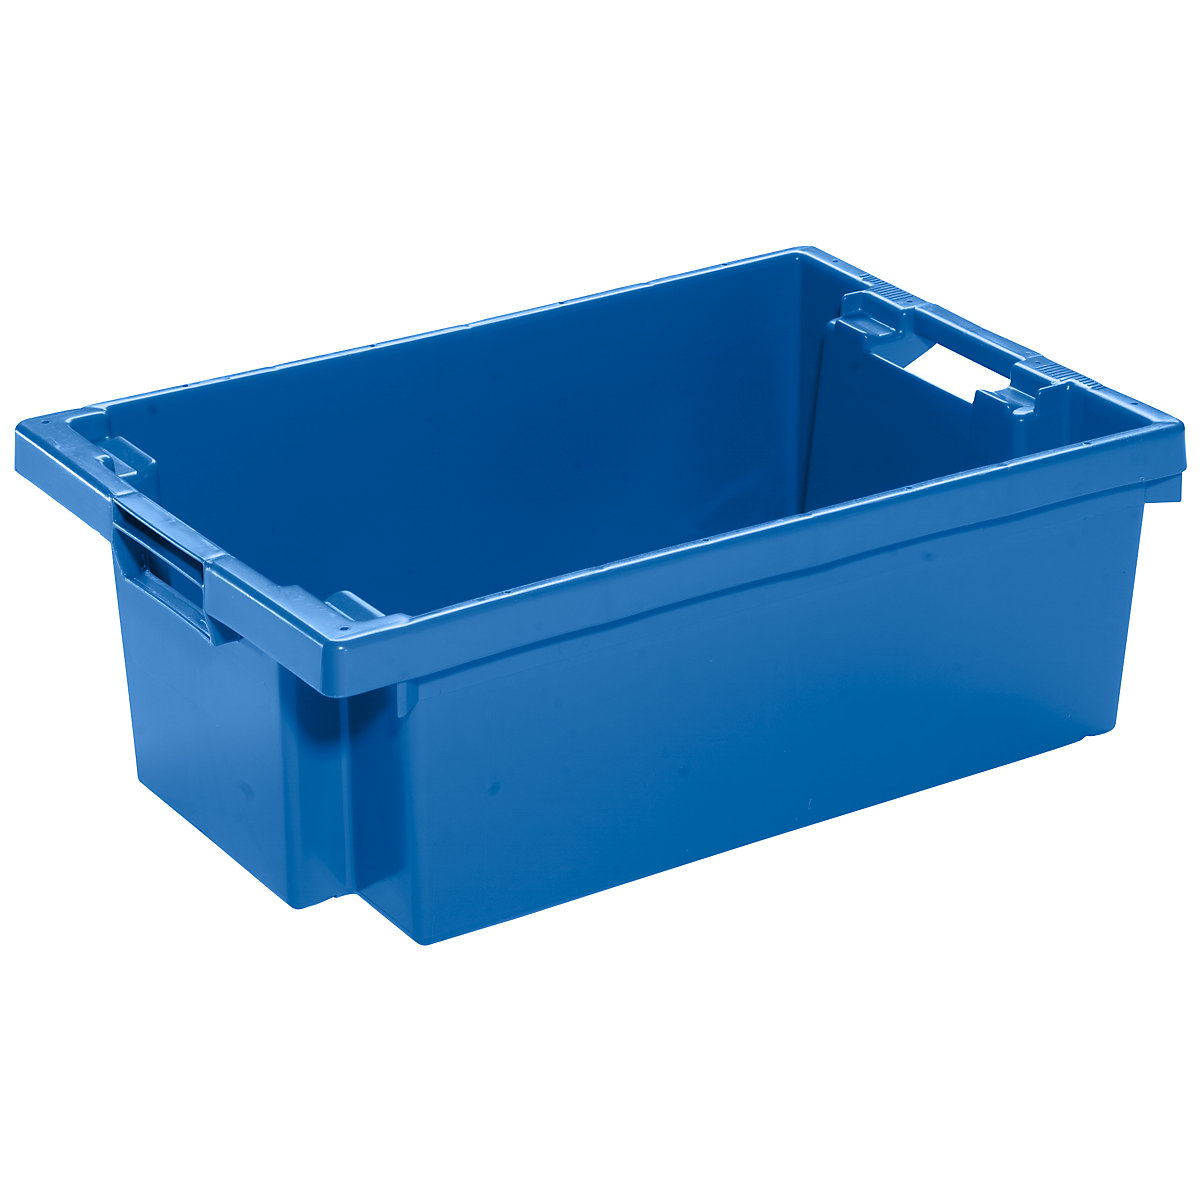 Drehstapelbehälter aus HDPE, Inhalt 32 l, Wände und Boden geschlossen, blau